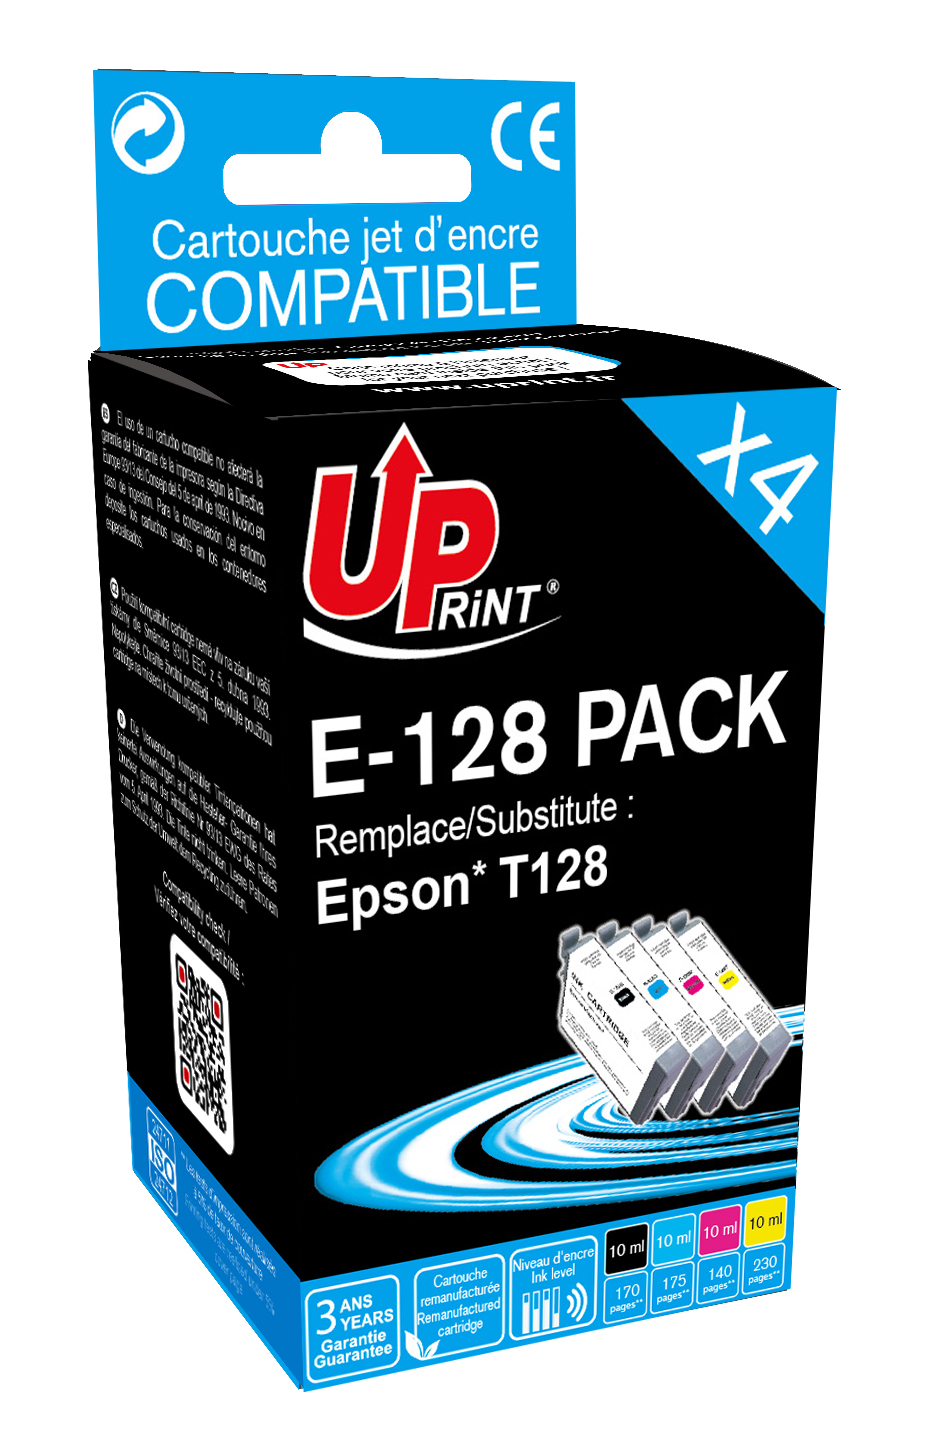 Pack PREMIUM compatible  EPSON T128 4 cartouches